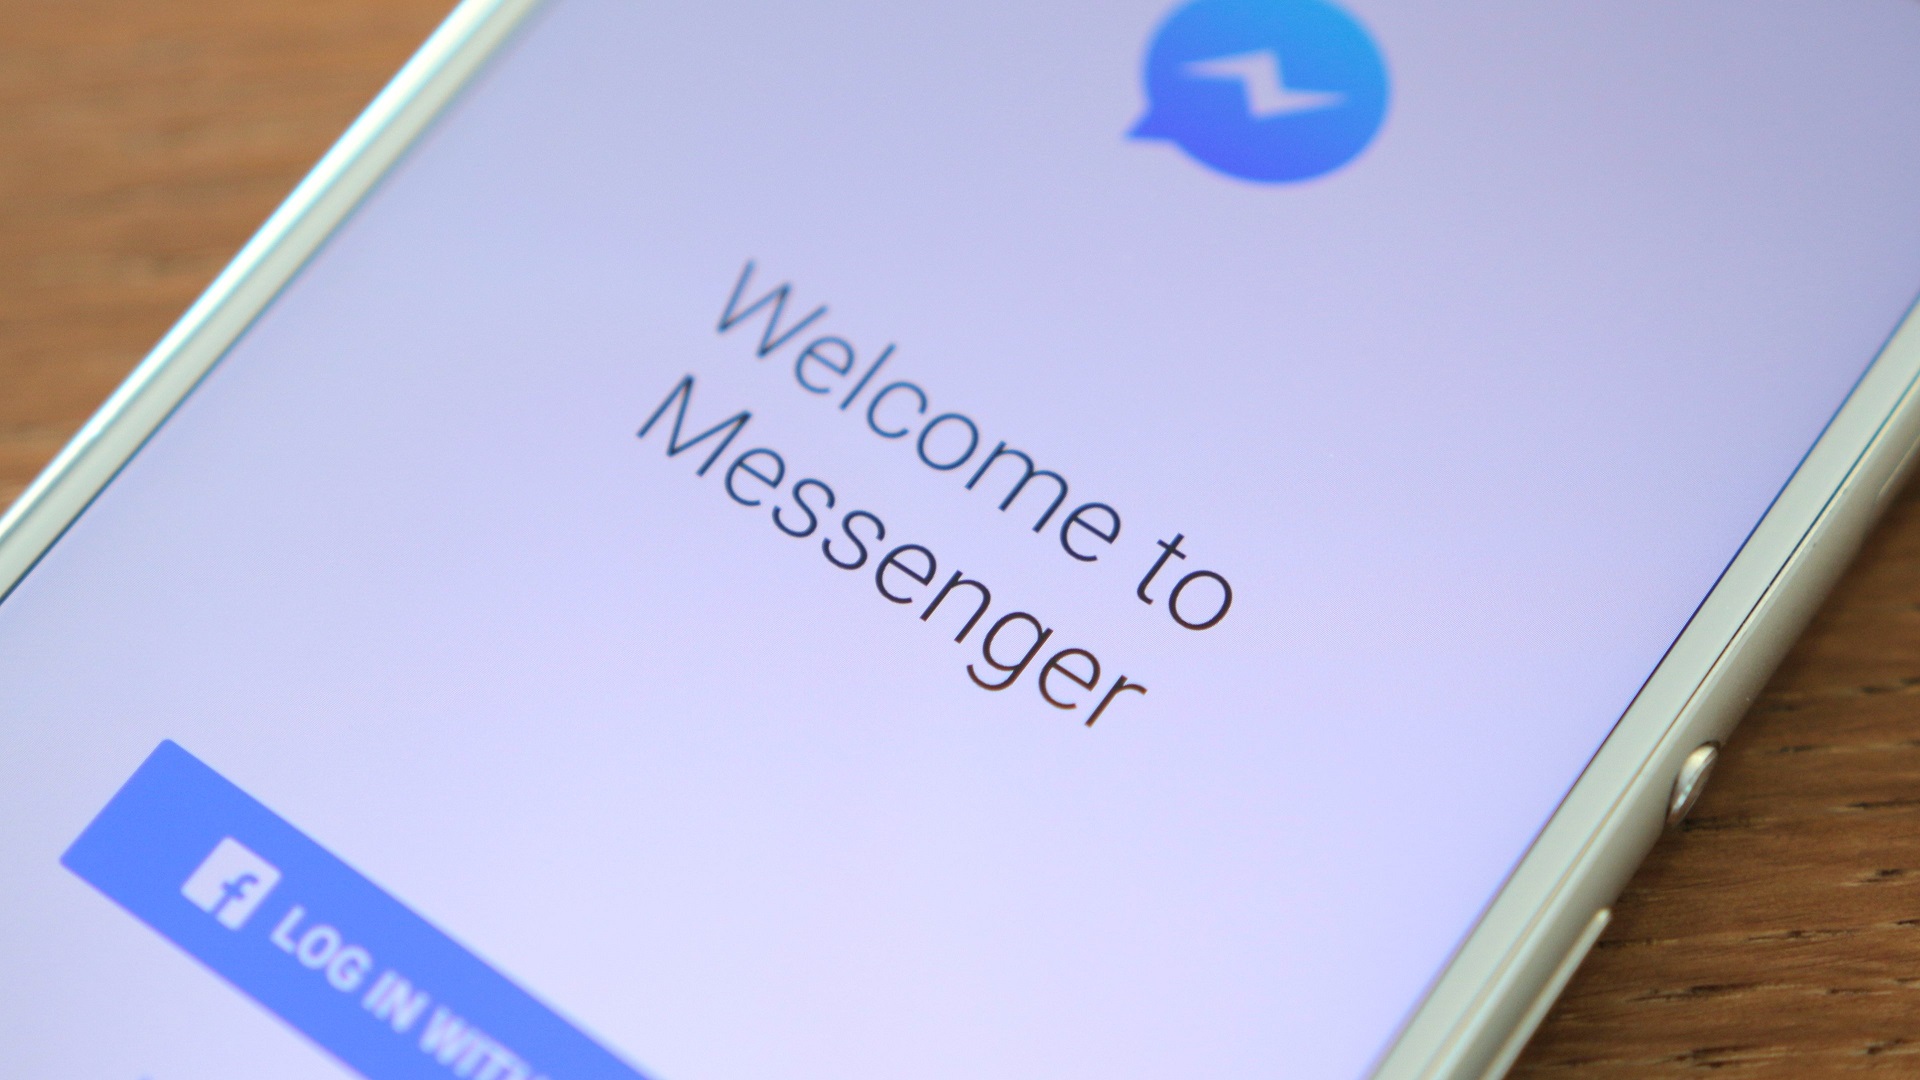 Hướng dẫn chạy quảng cáo trên Facebook Messenger hiệu quả